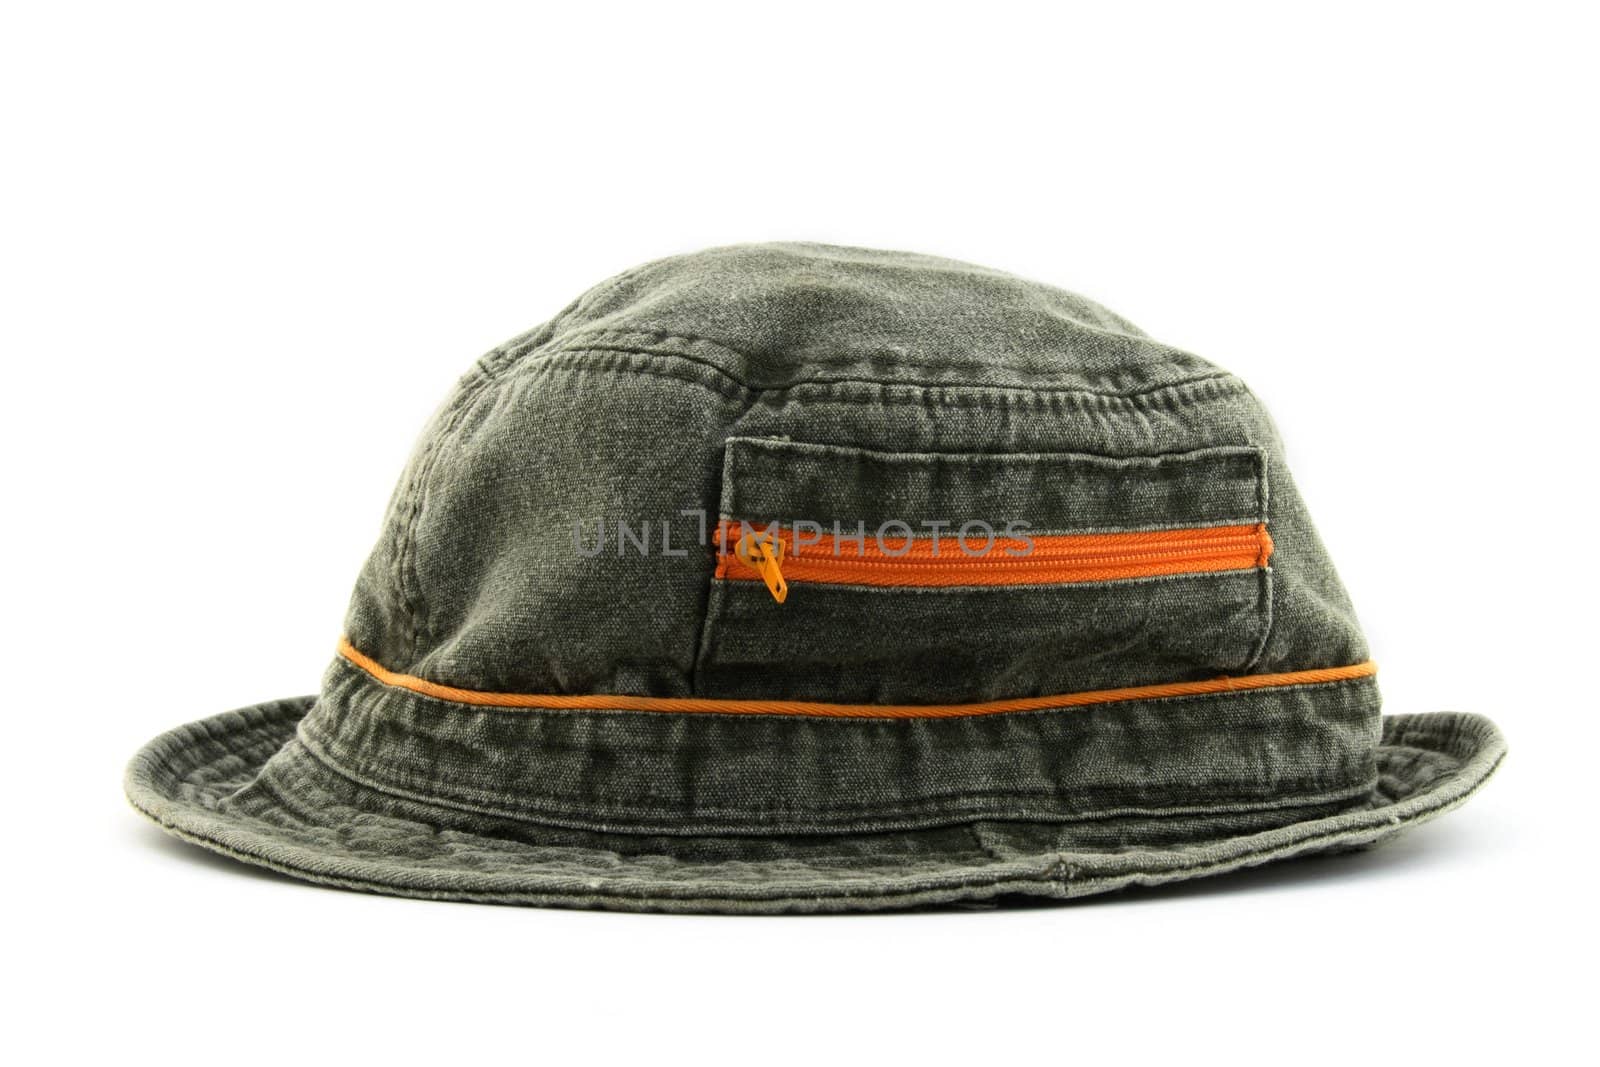 Summer denim hat with orange zipper, on white background.